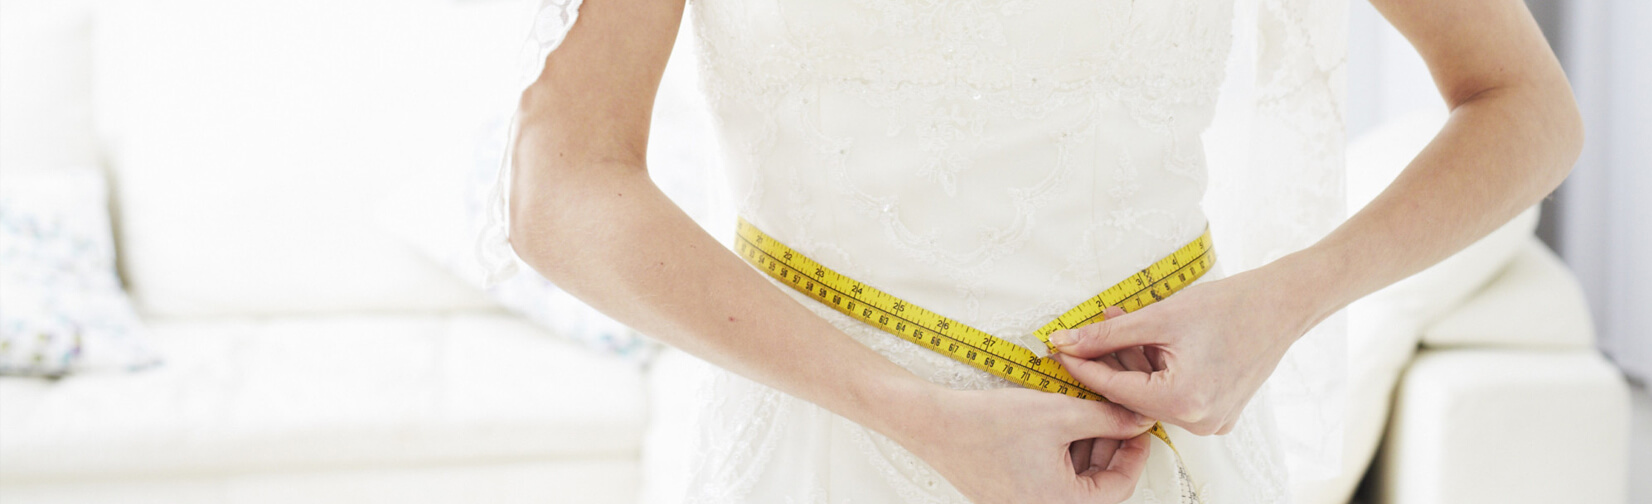 Wedding Weight Loss